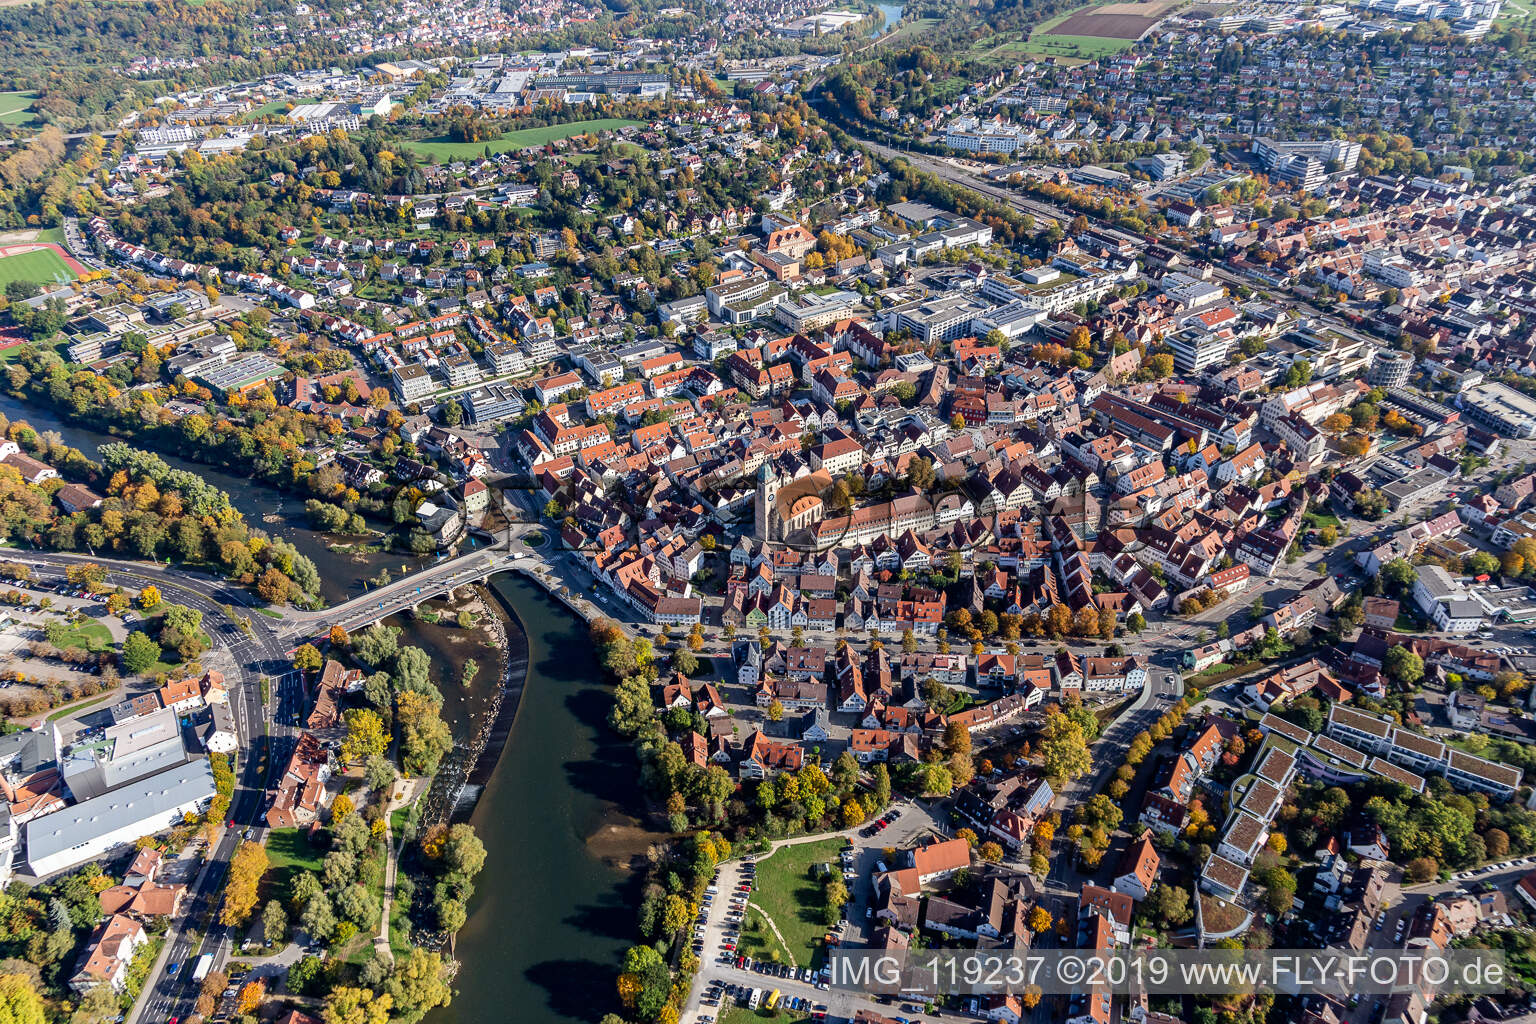 Schrägluftbild von Ortskern am Uferbereich des Neckar - Flußverlaufes in Nürtingen im Bundesland Baden-Württemberg, Deutschland